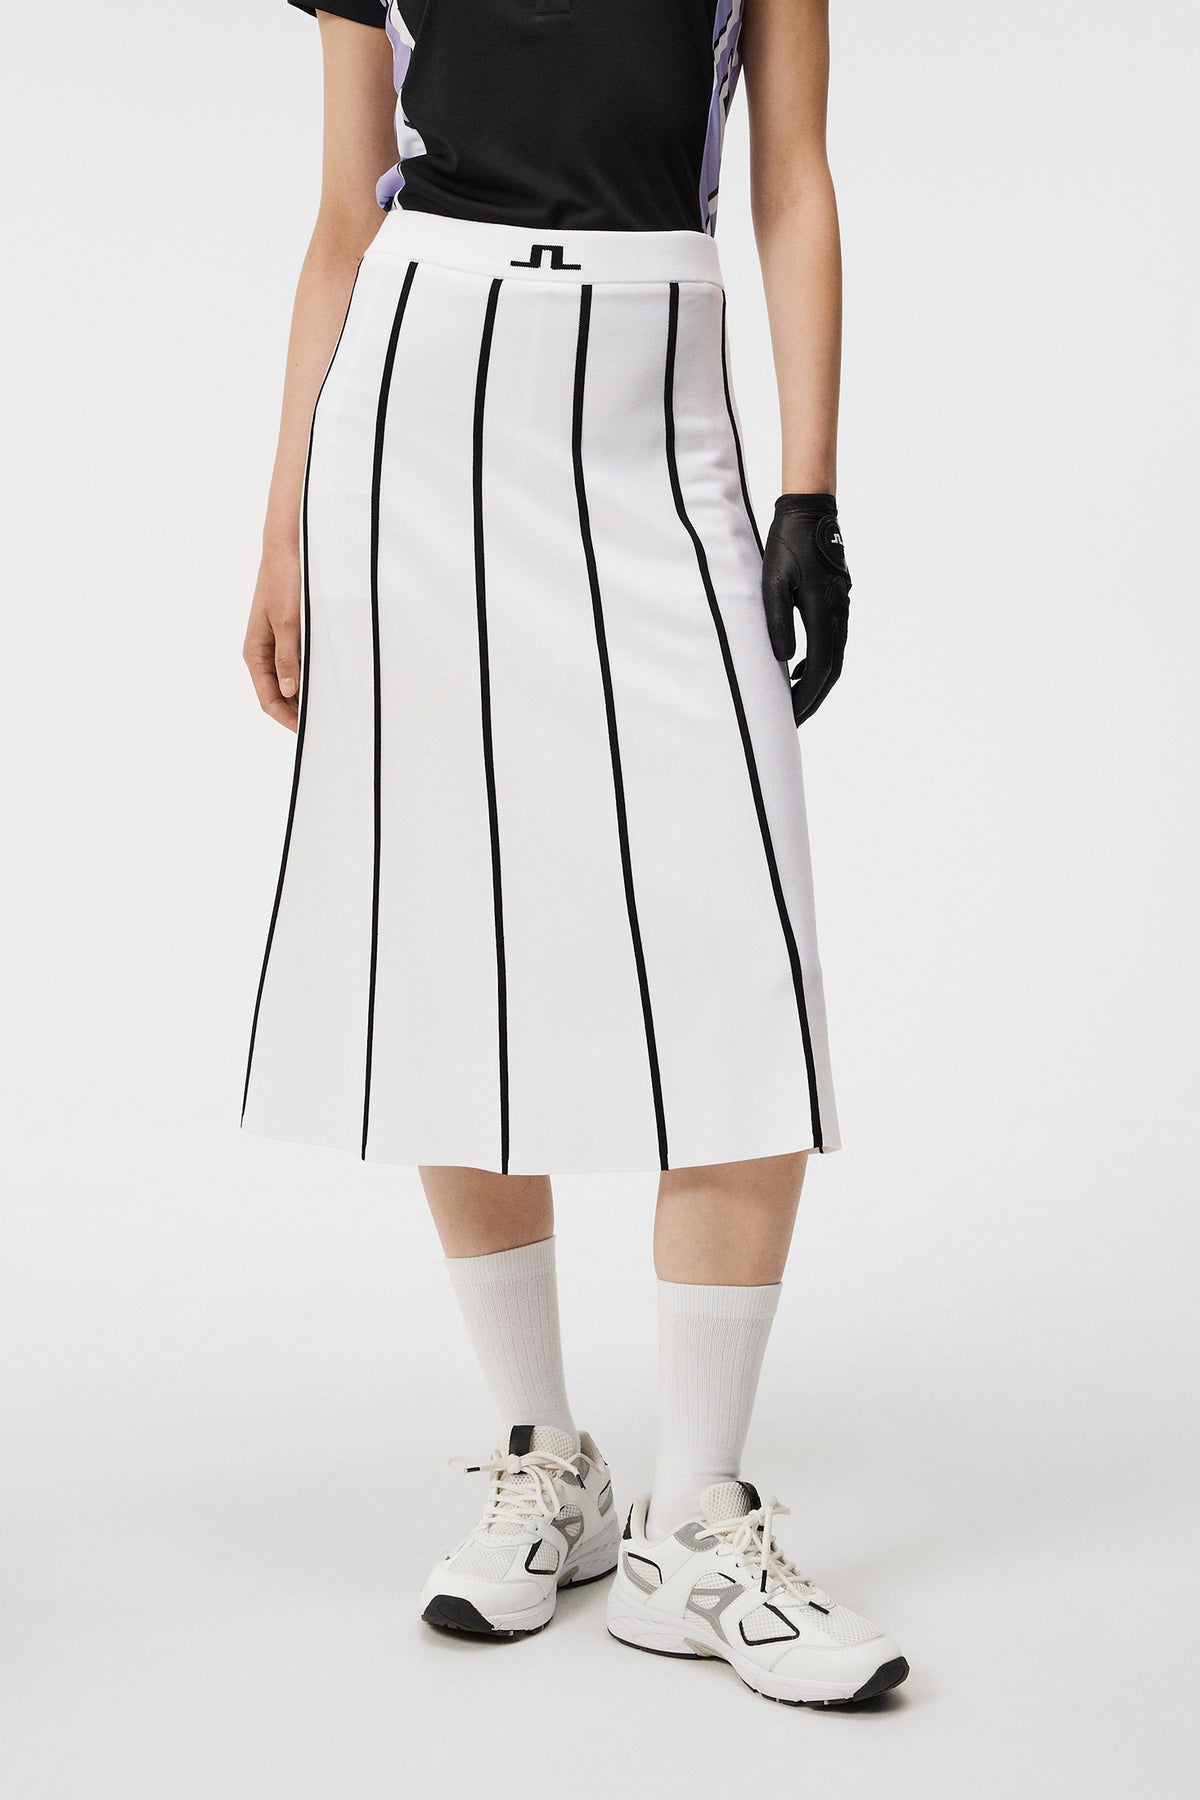 Sally Knitted Skirt / White